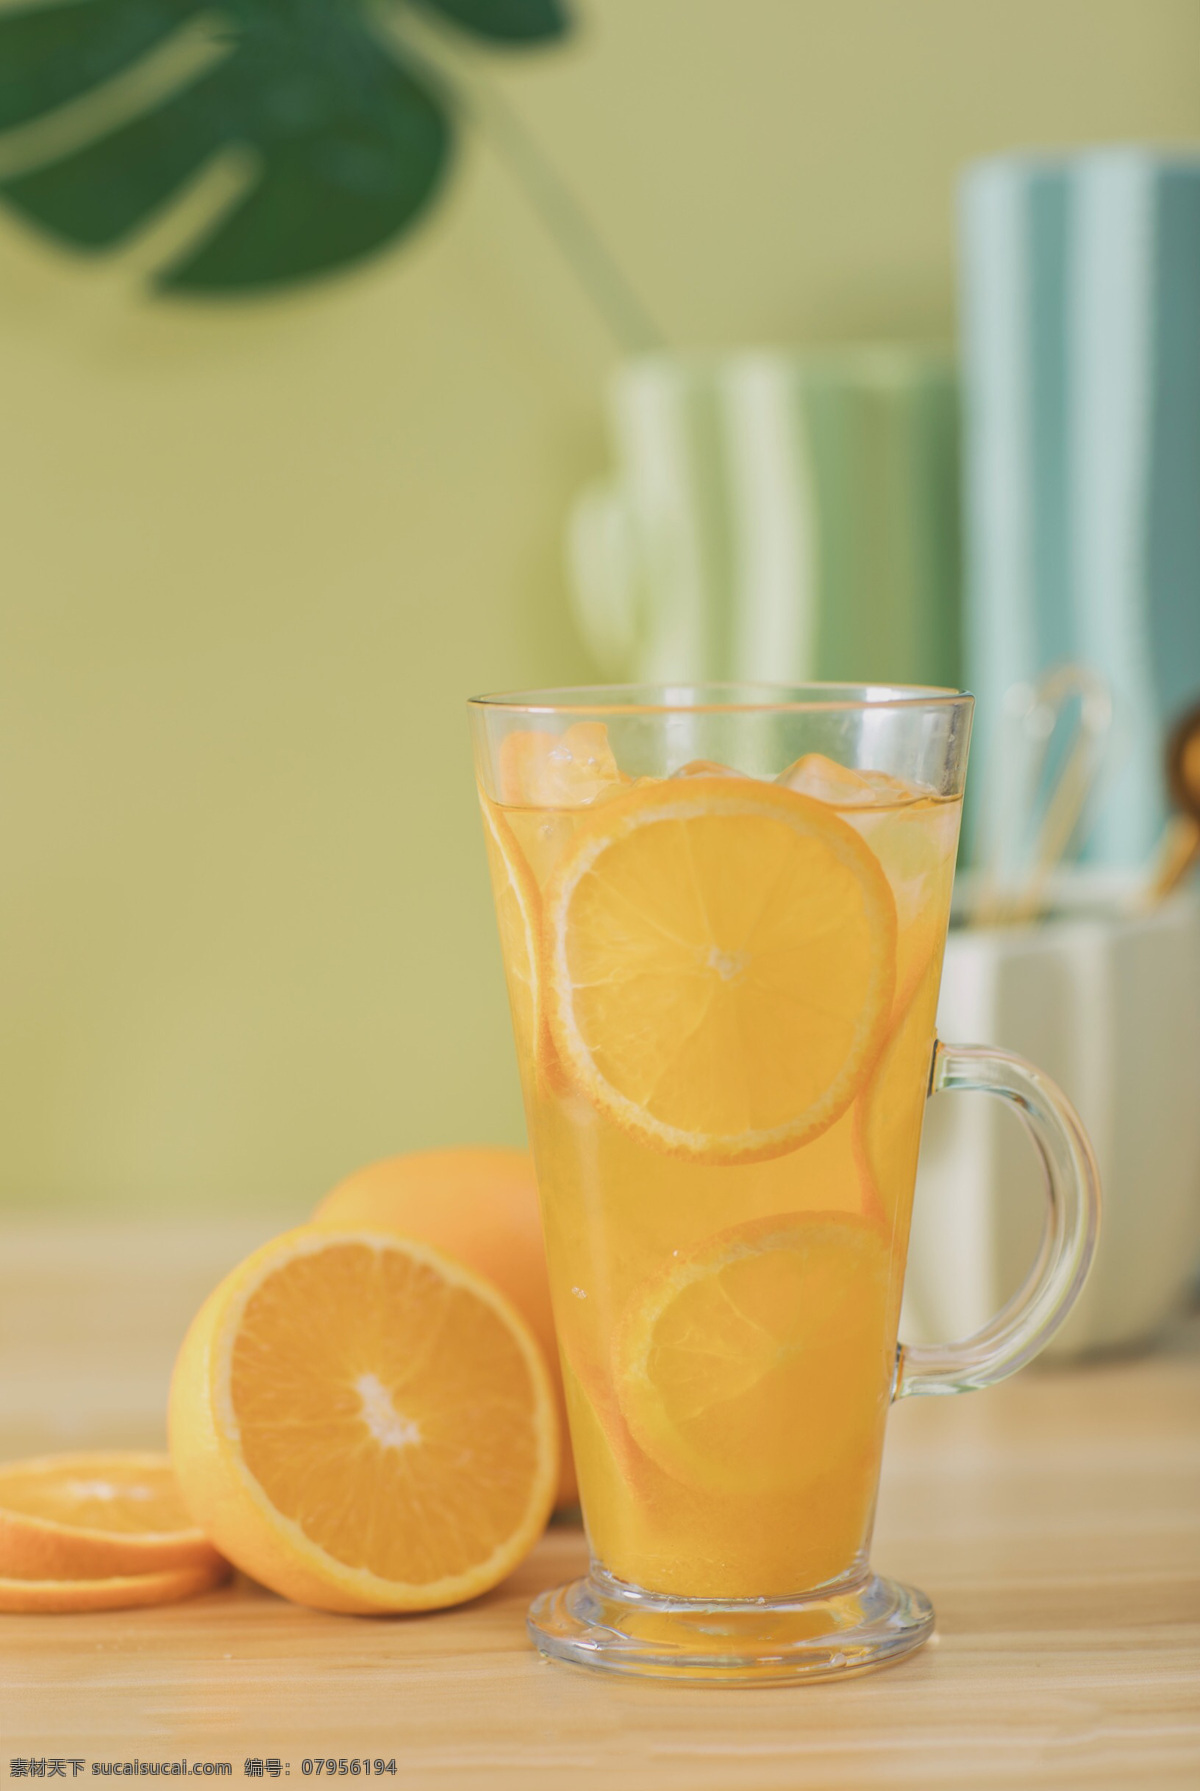 鲜橙汁 水果 新鲜 水果茶 橙子 橙汁 果汁 餐饮美食 饮料酒水